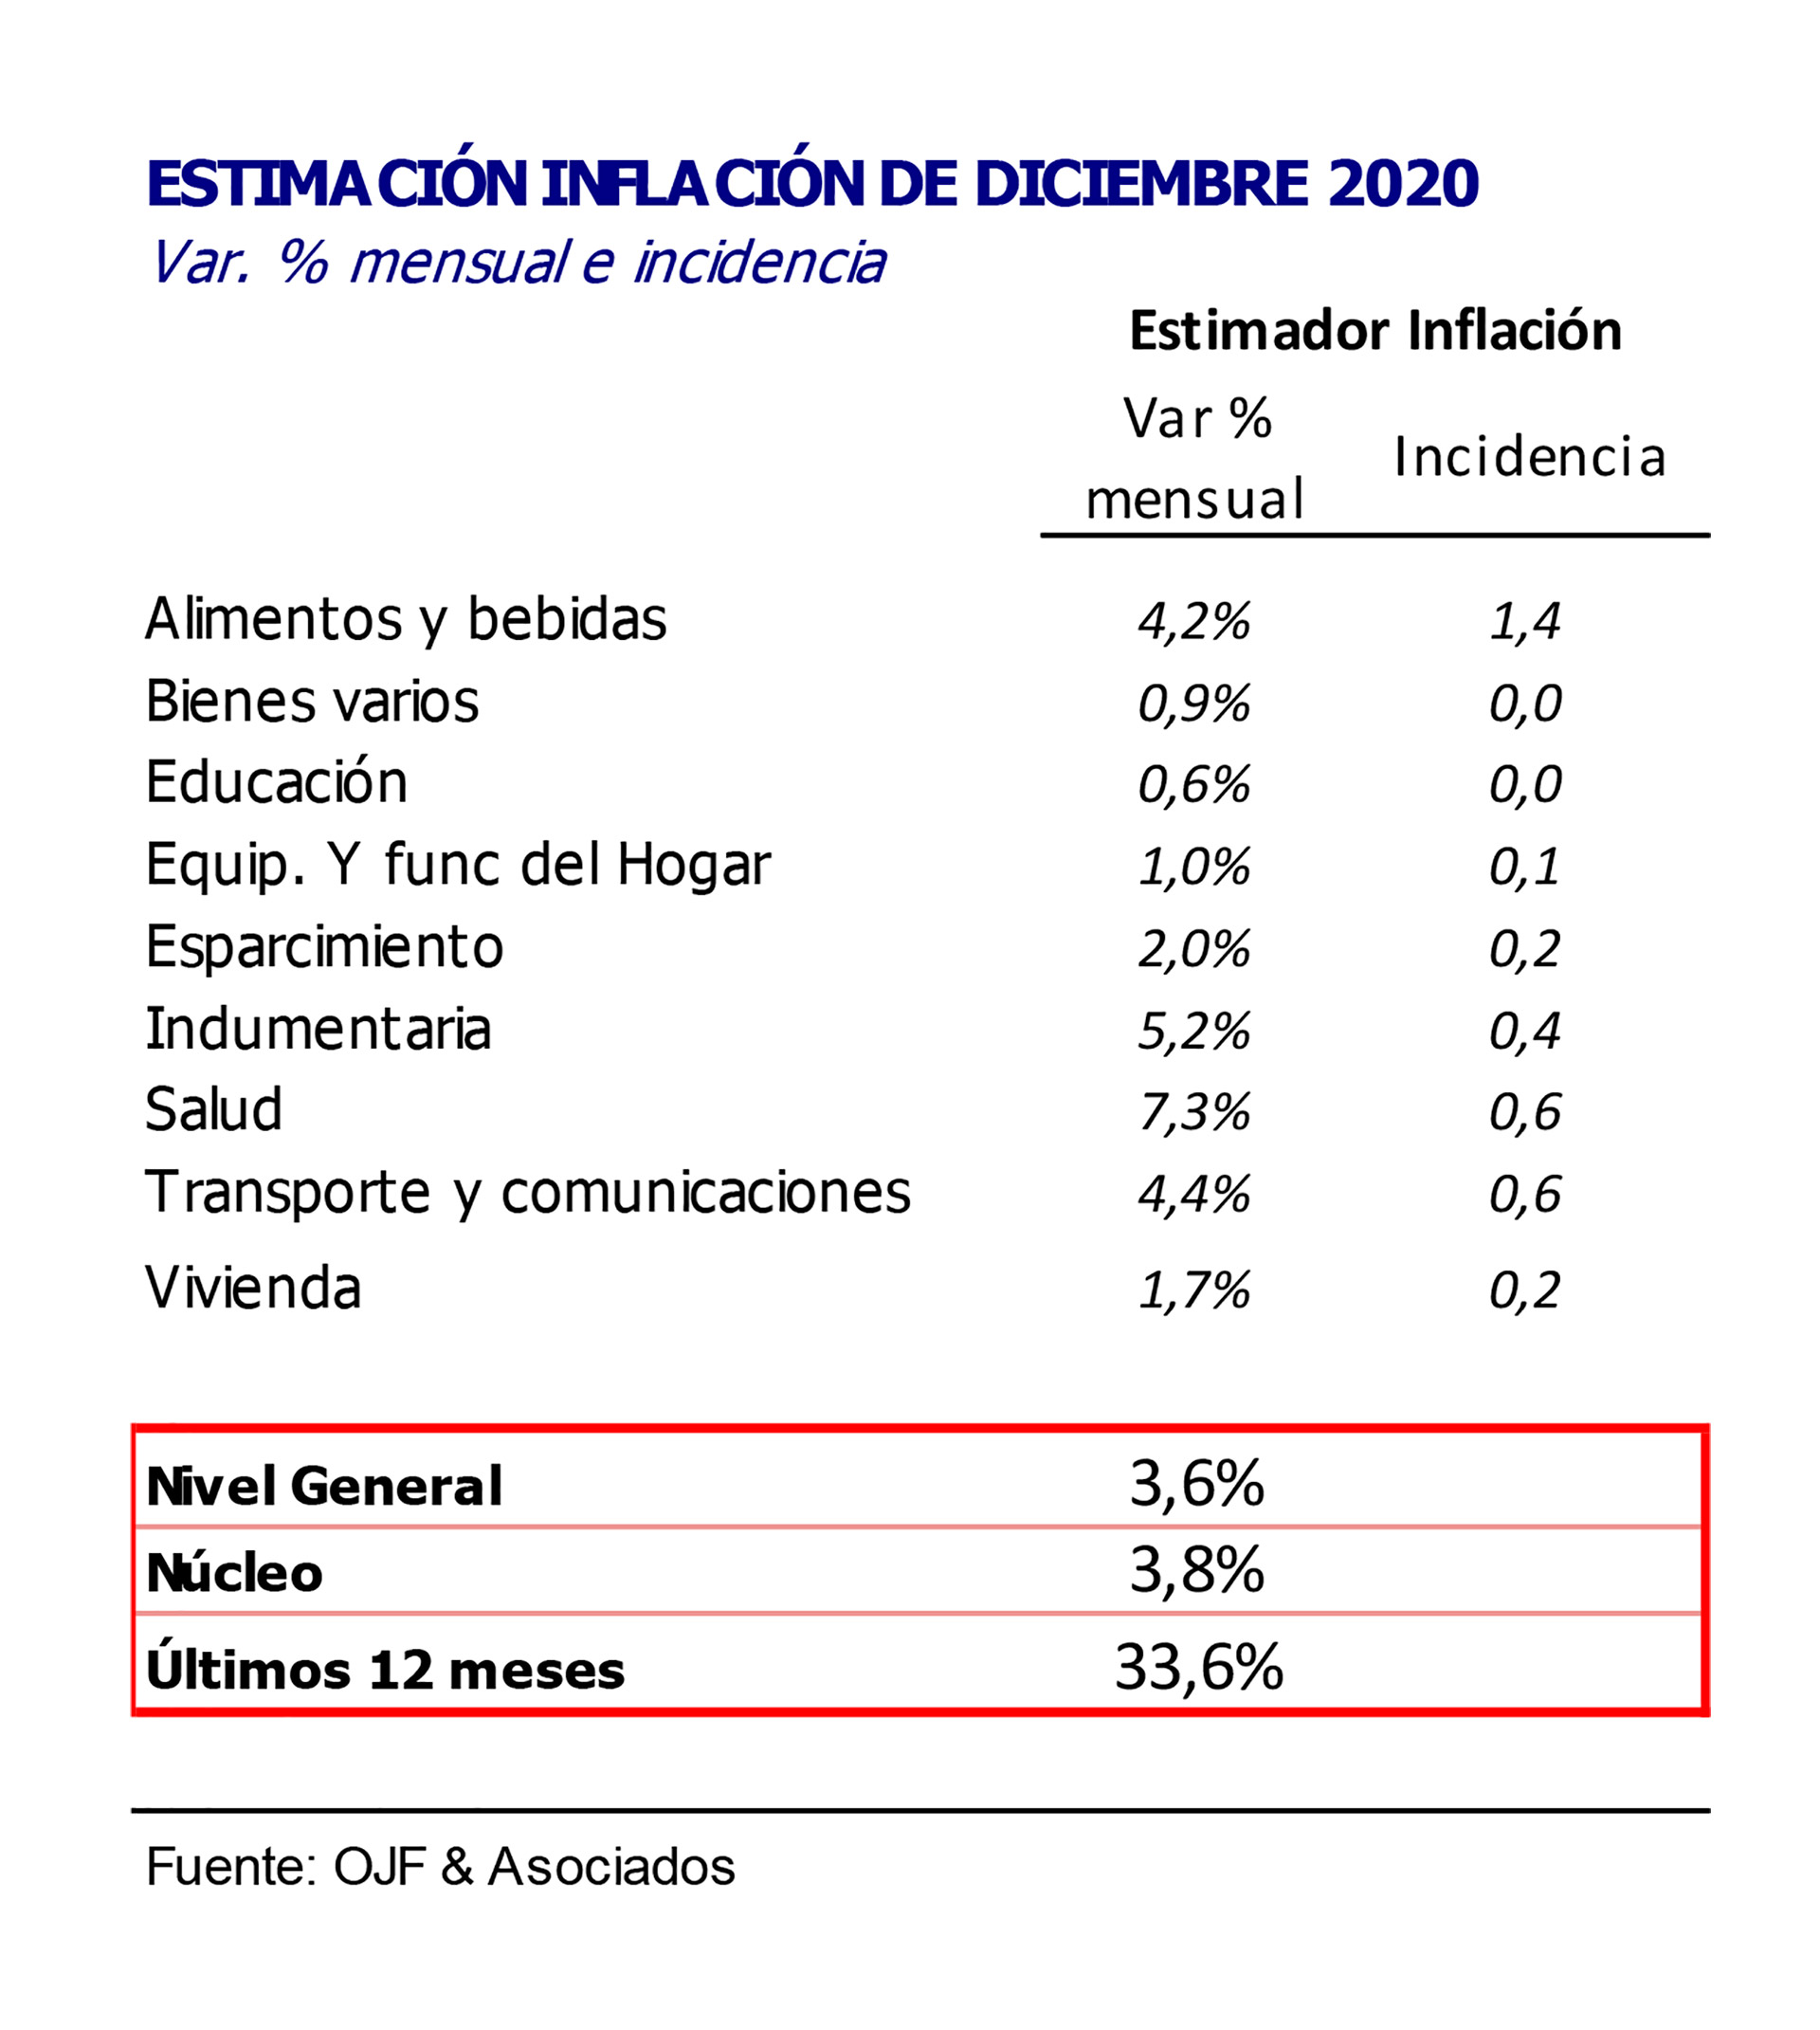 Las estimaciones de inflación de diciembre del año pasado del estudio Ferreres & Asociados